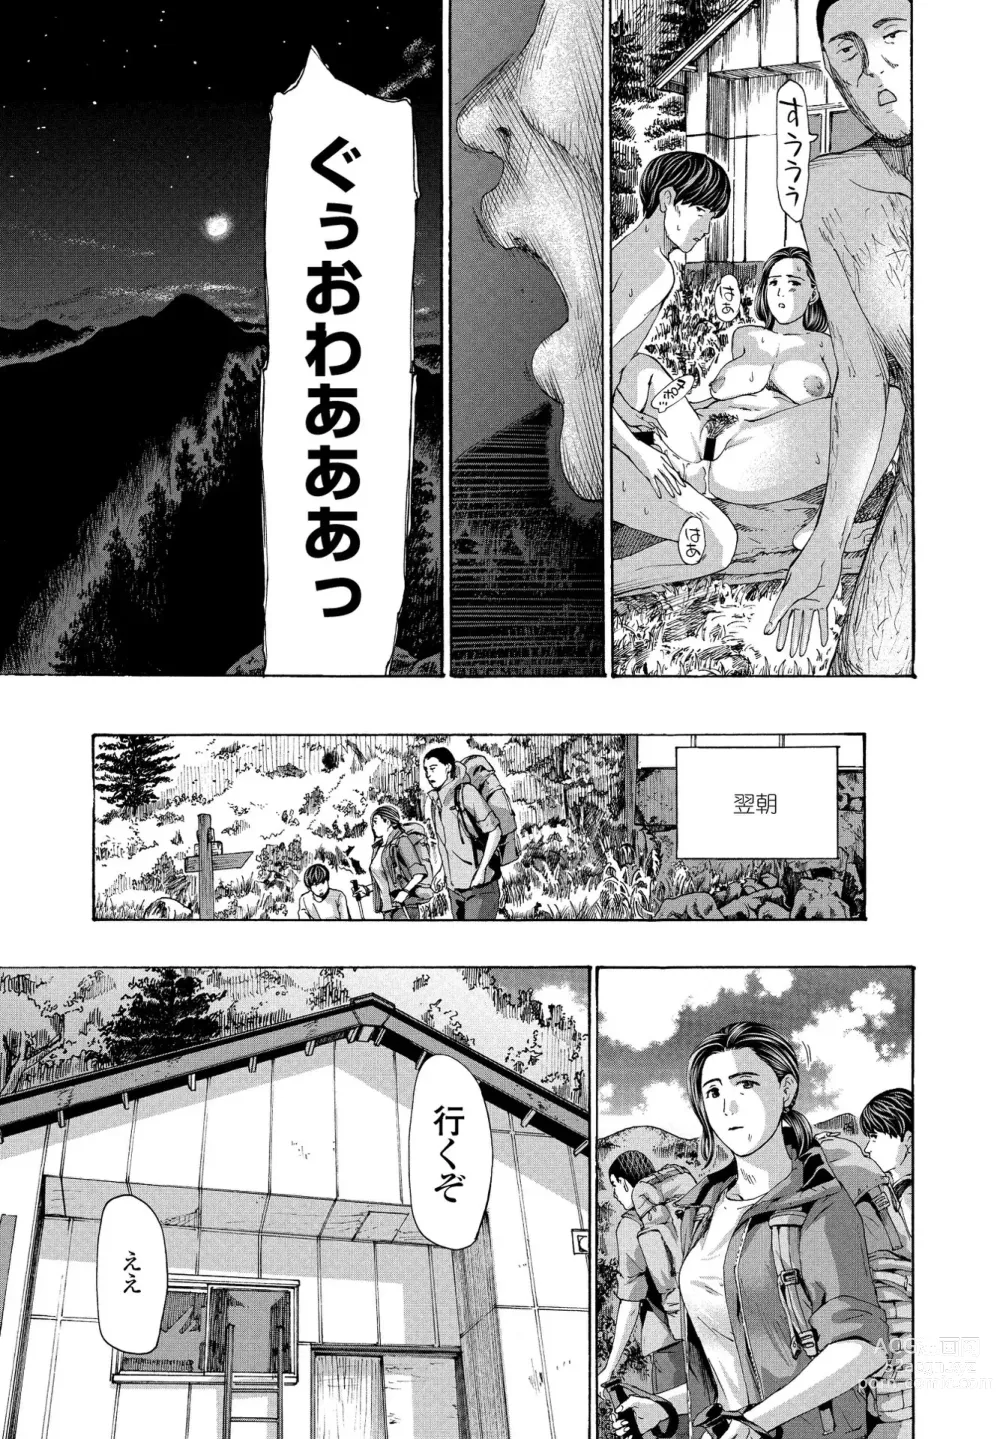 Page 51 of manga Hinangoya nite